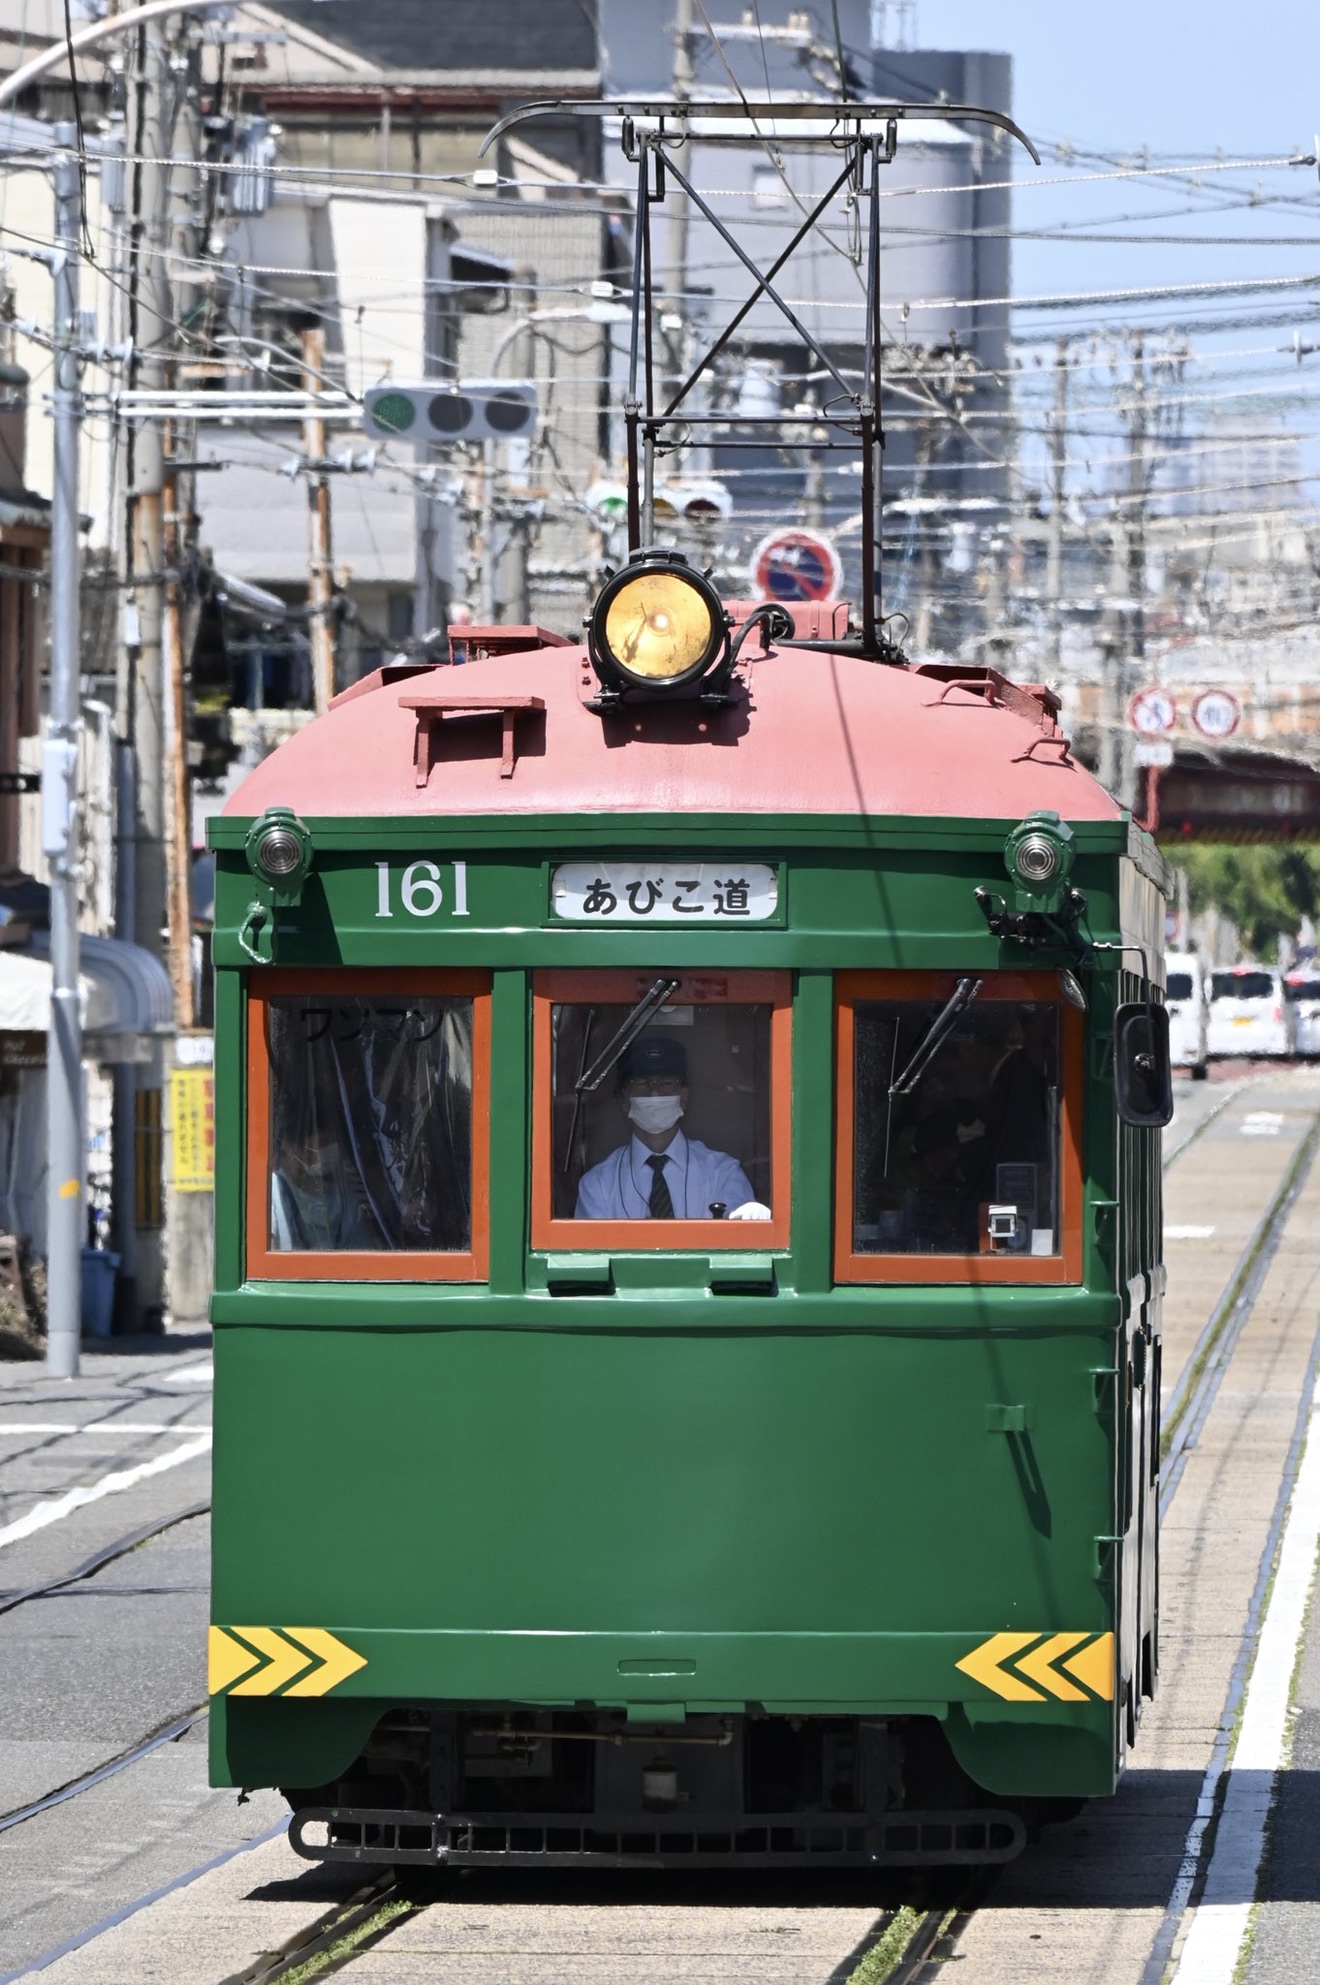 【阪堺】国内現役最古の車両「モ161号」GW 期間中に通常運行の拡大写真